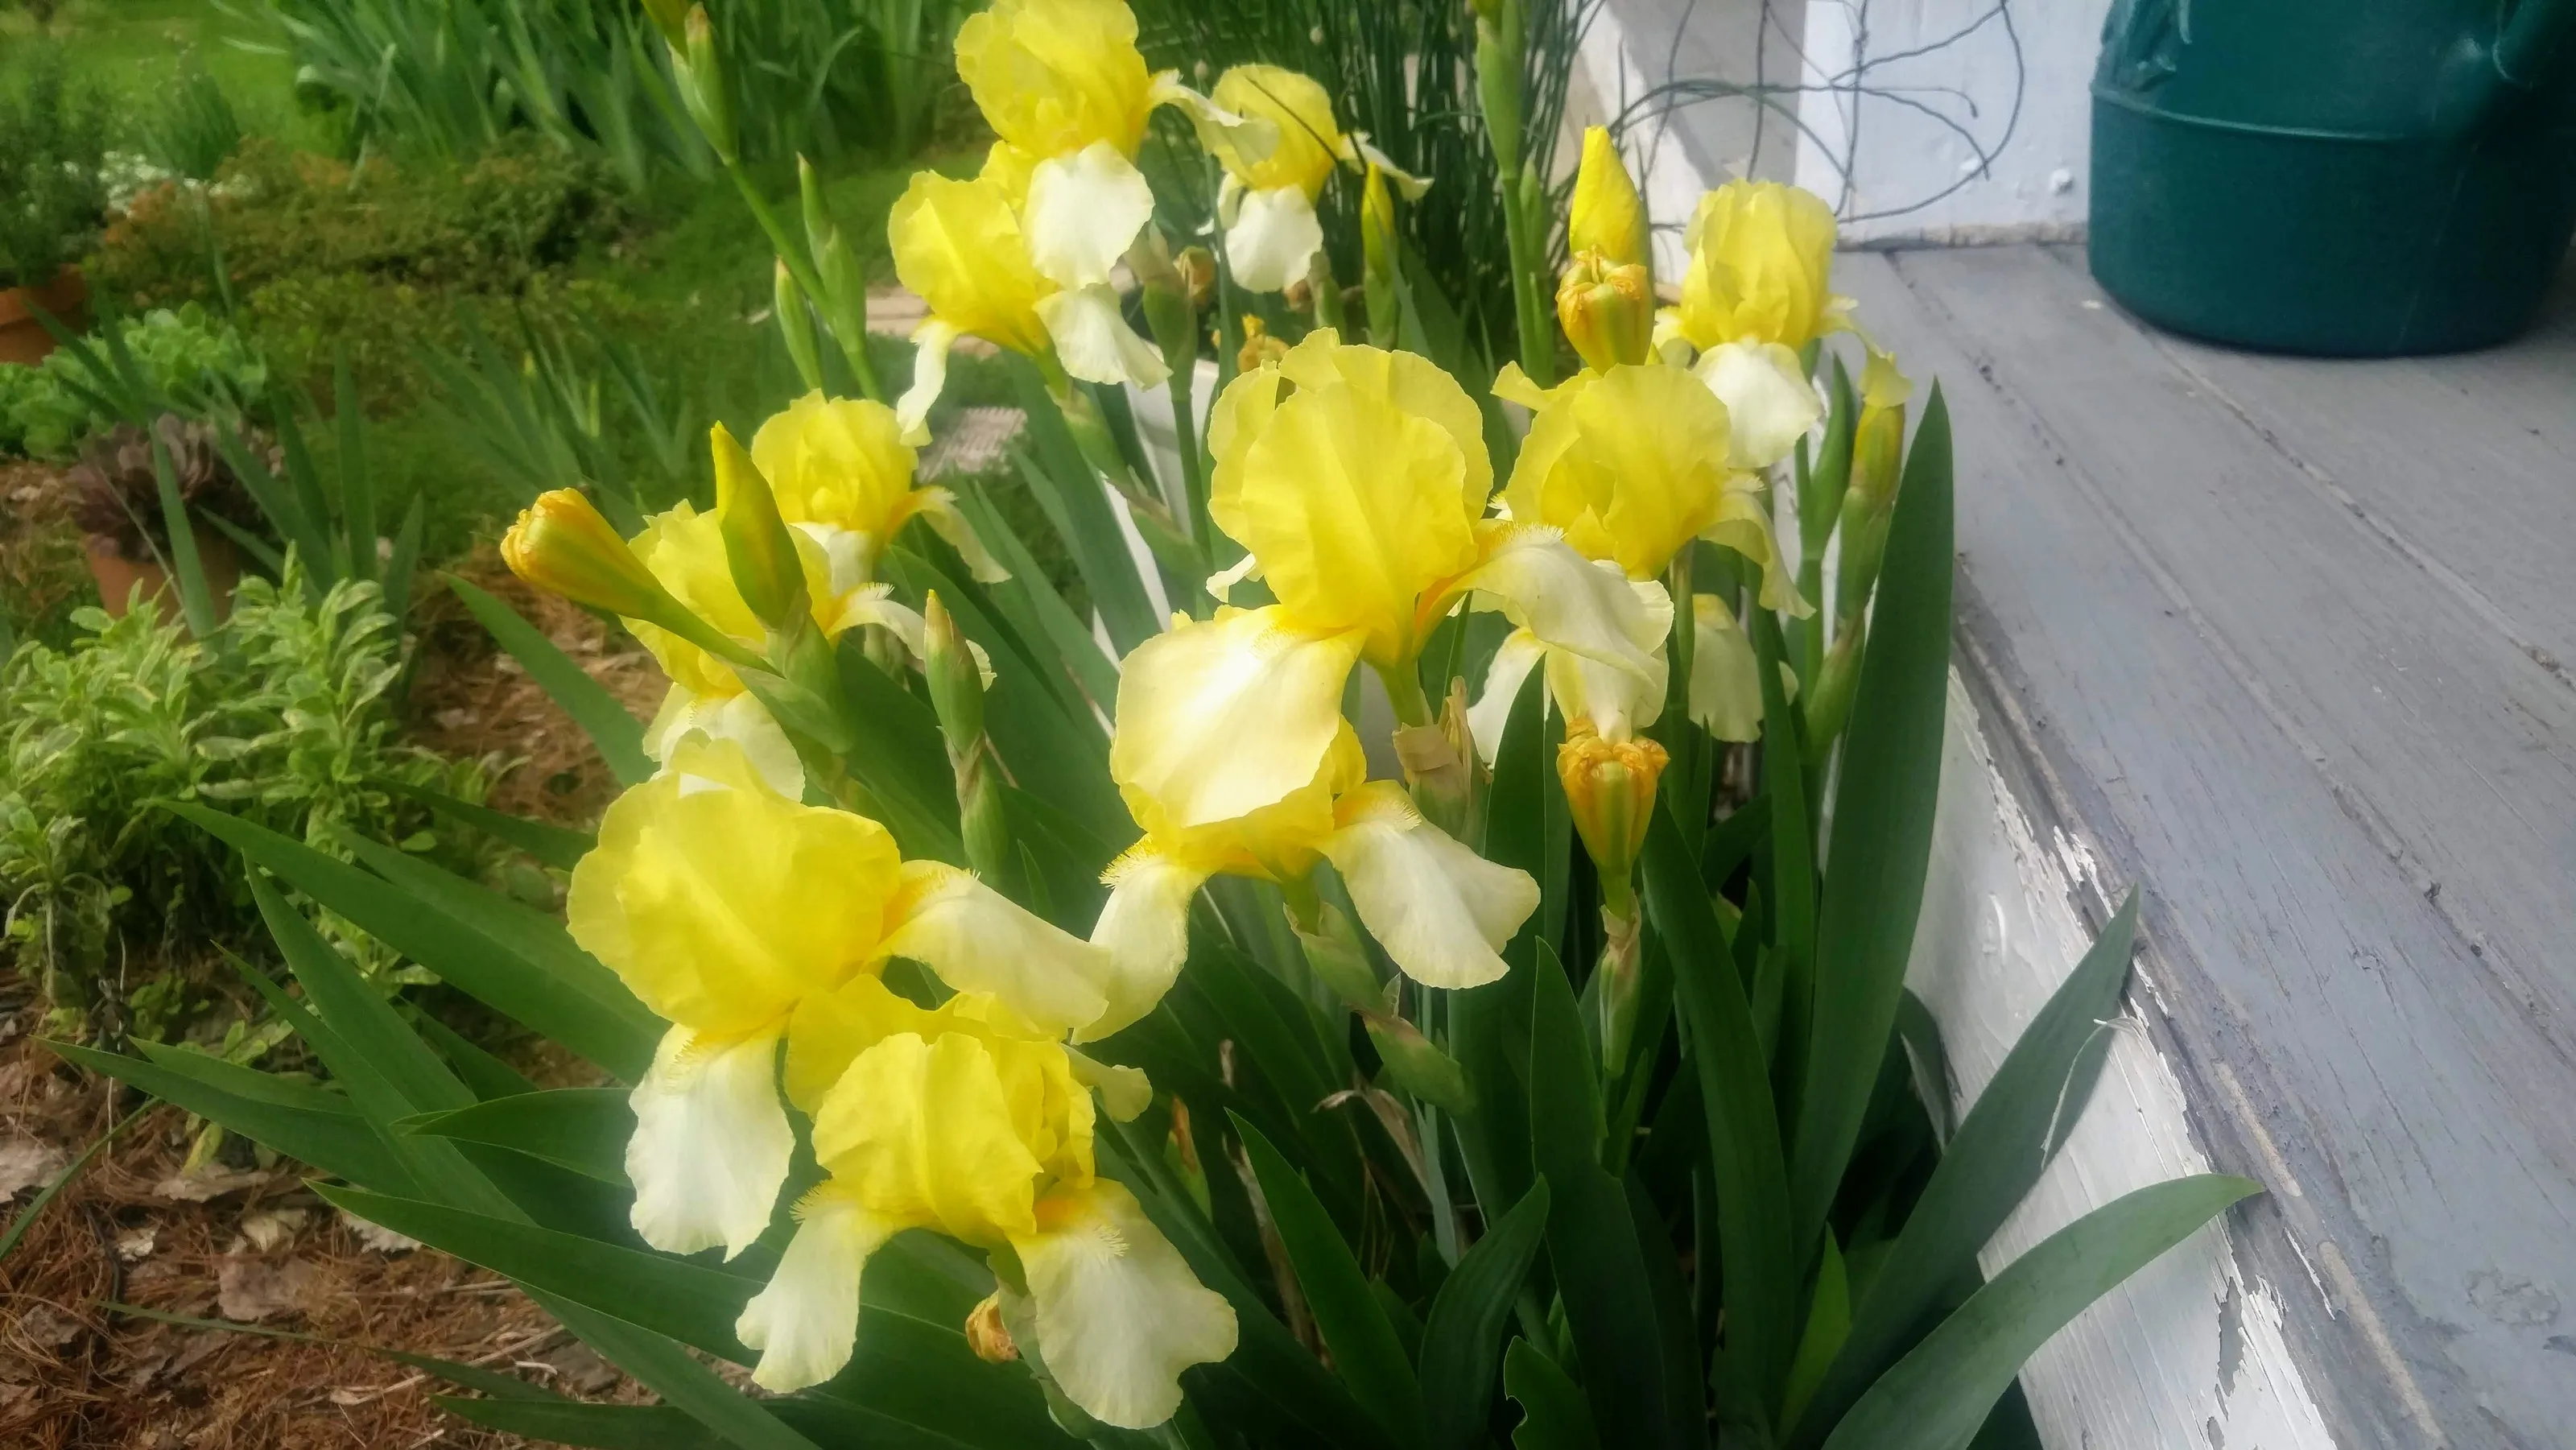 Iris fiore